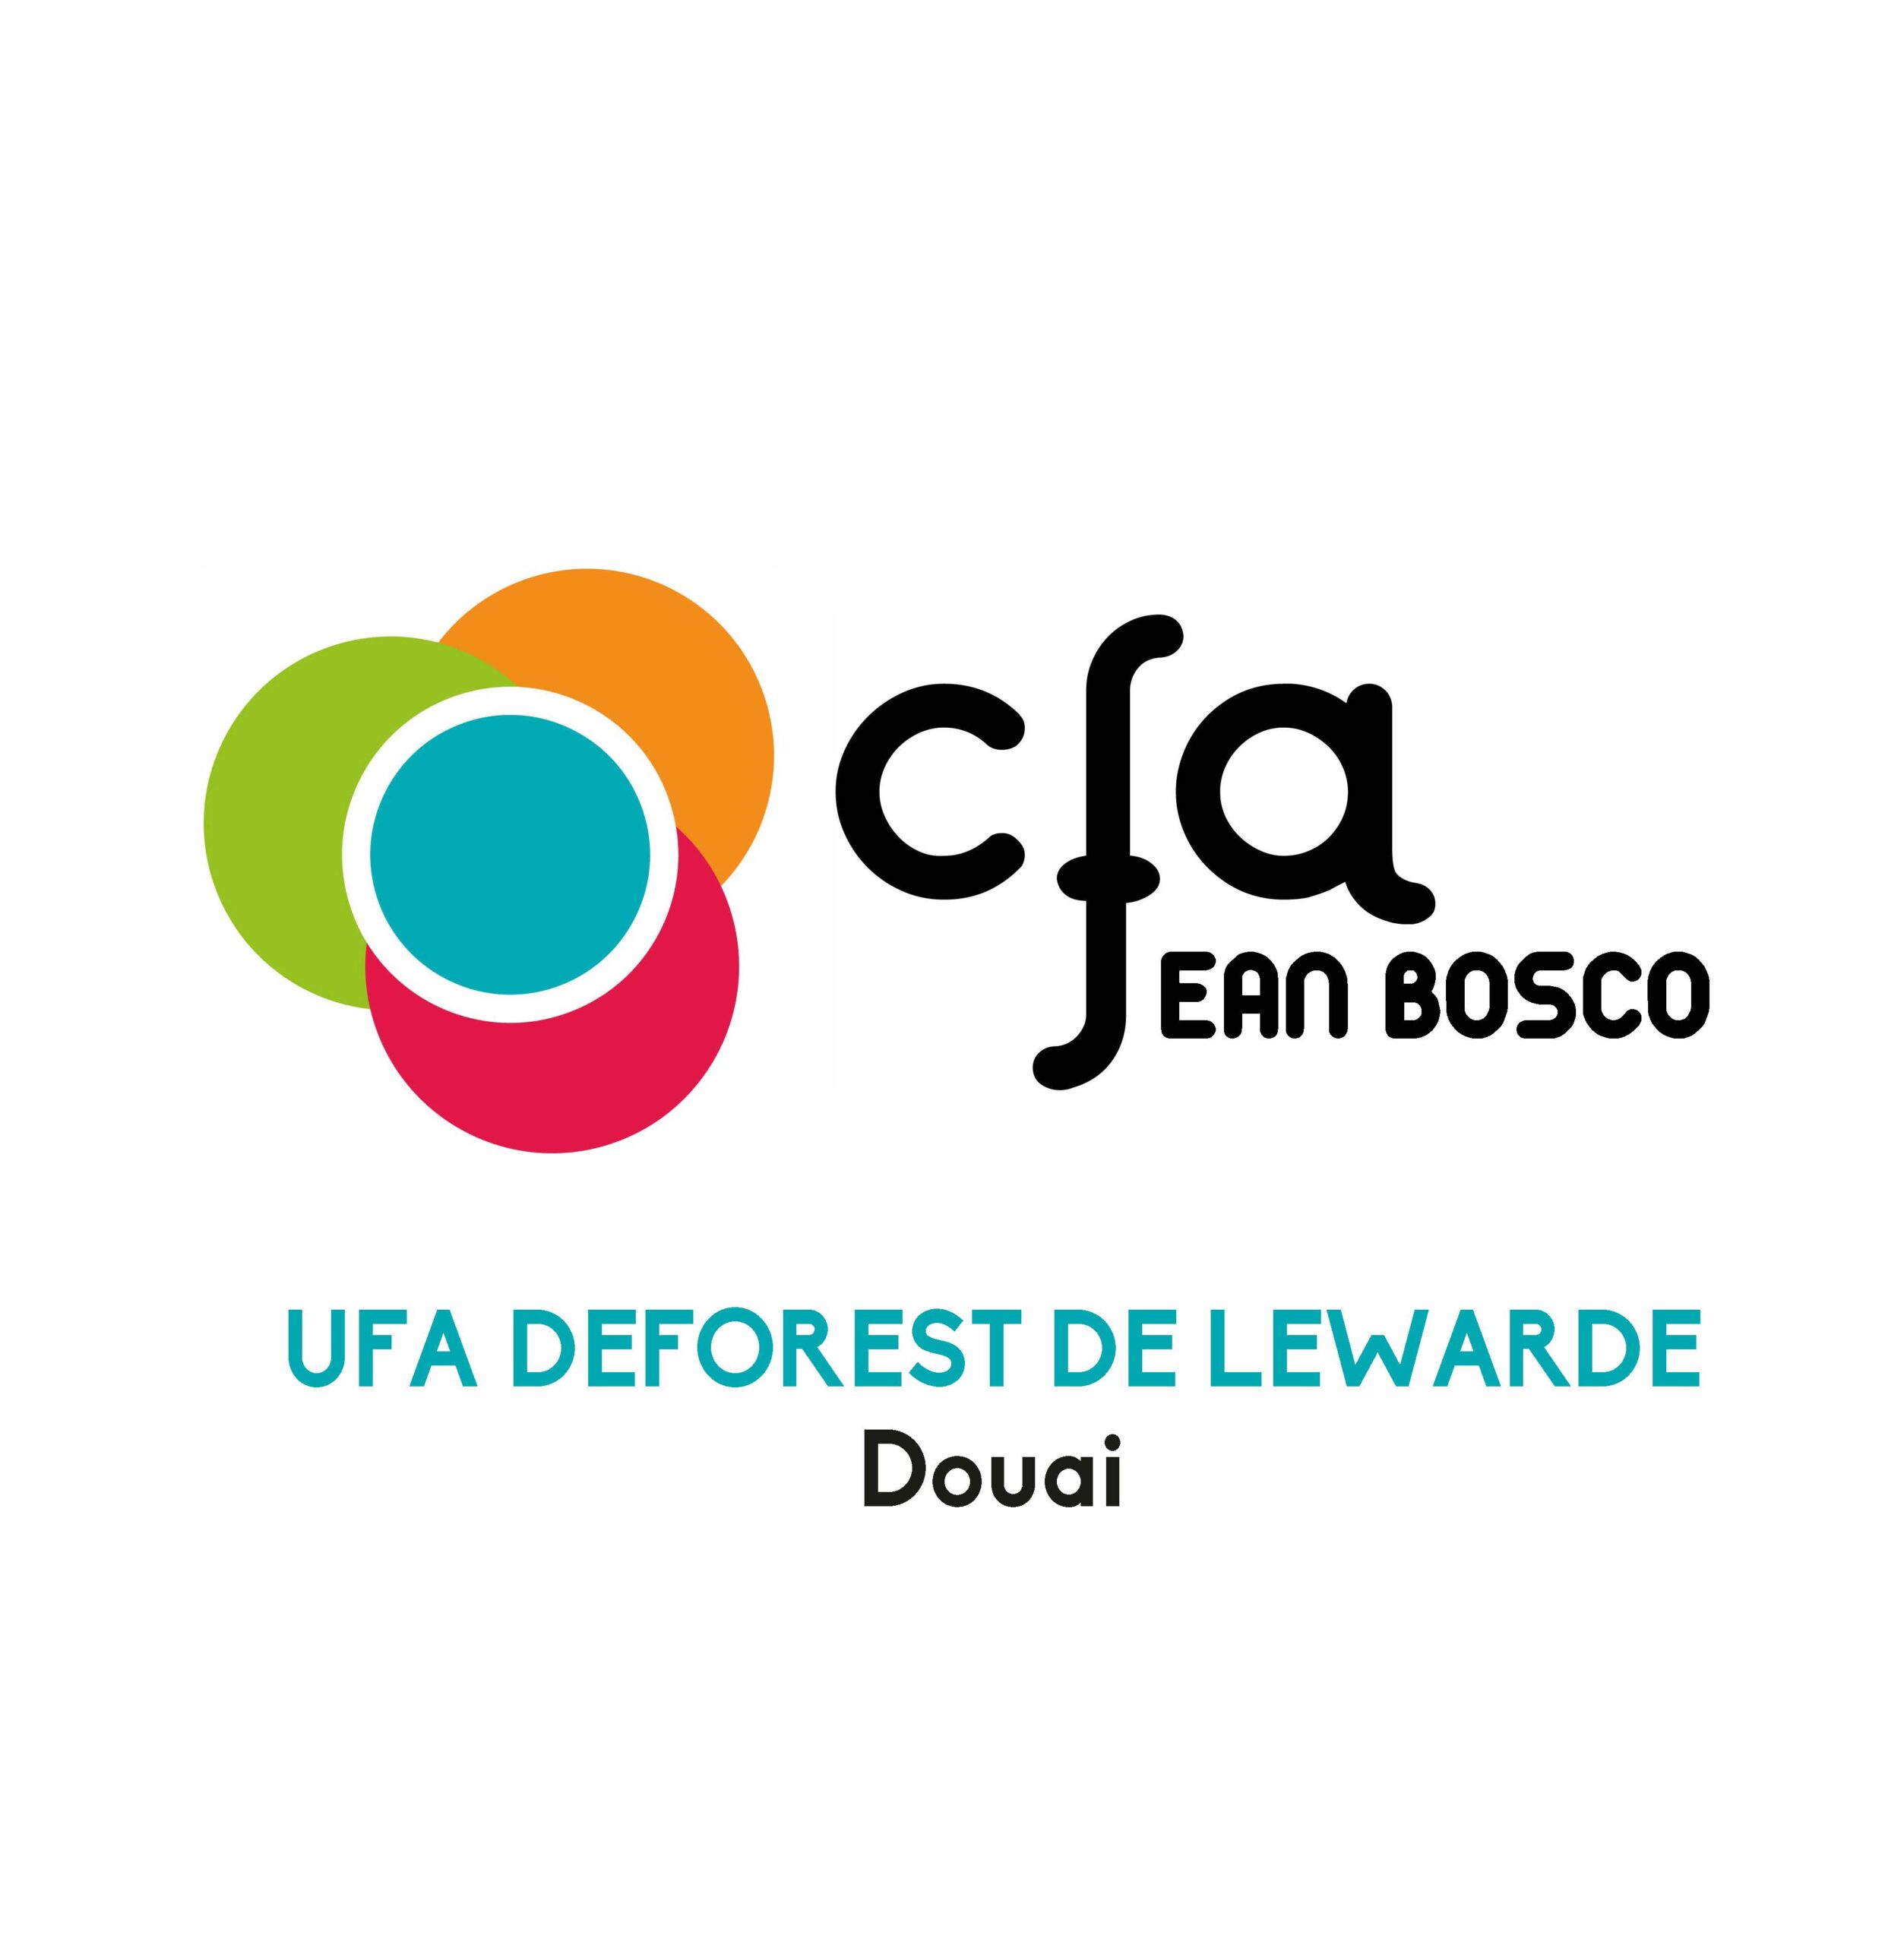 UFA DEFOREST DE LEWARDE Douai